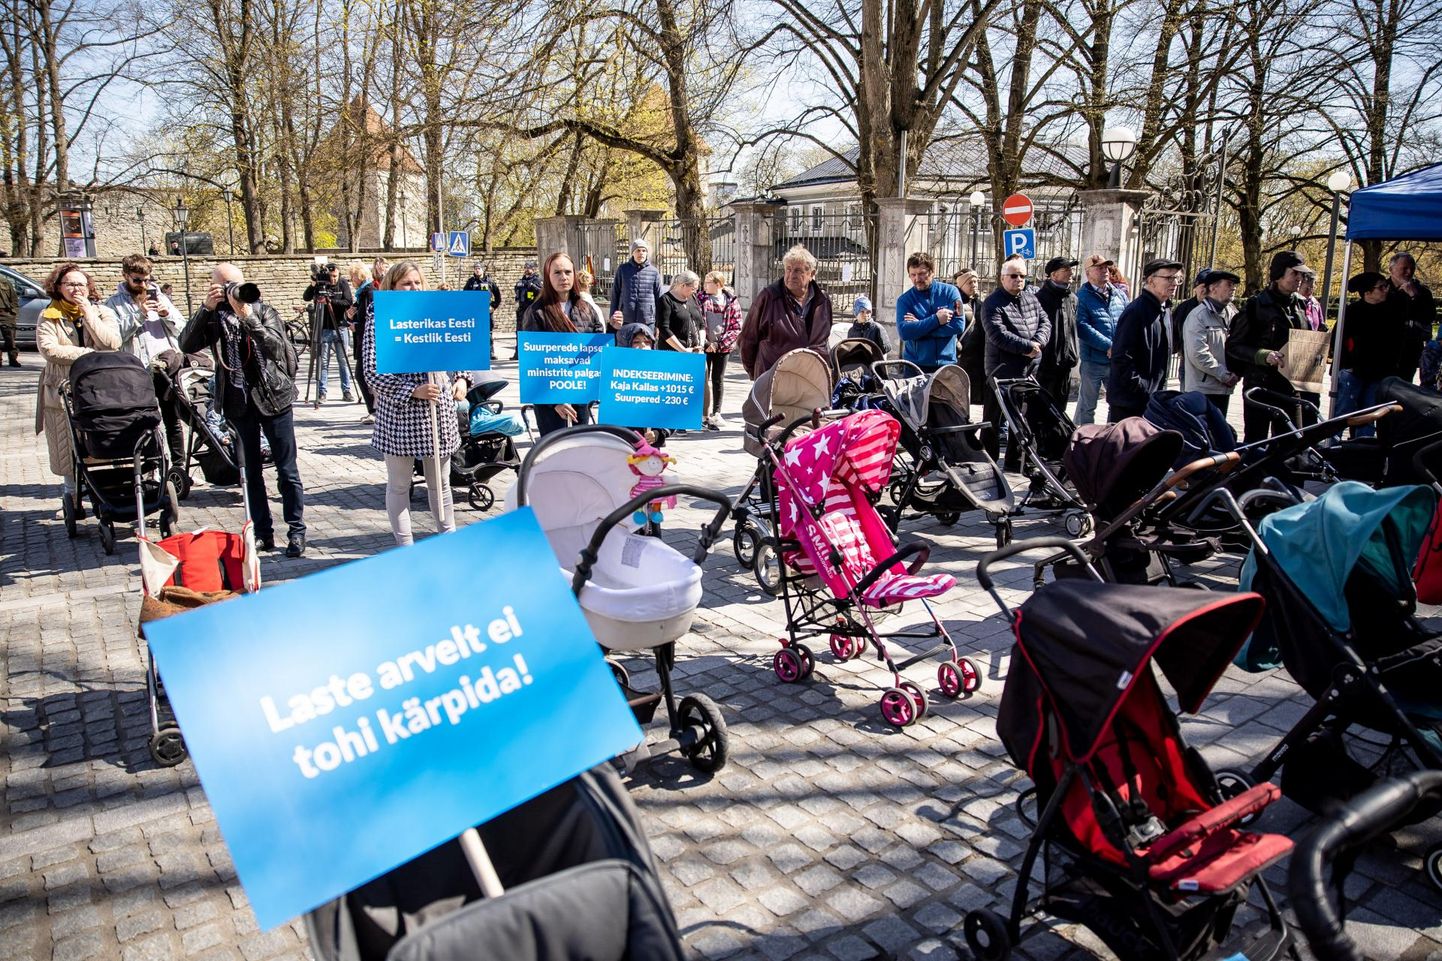 Suurperede liit aitas kokku koguda lapsevankrid, mis pärast lastetoetuse vähendamist tühjaks jäävad. Juba praegu on Eestis sündimusega kehvad lood, vähenev lastetoetus kindlasti kolmanda lapse saamise soovi ei toeta.